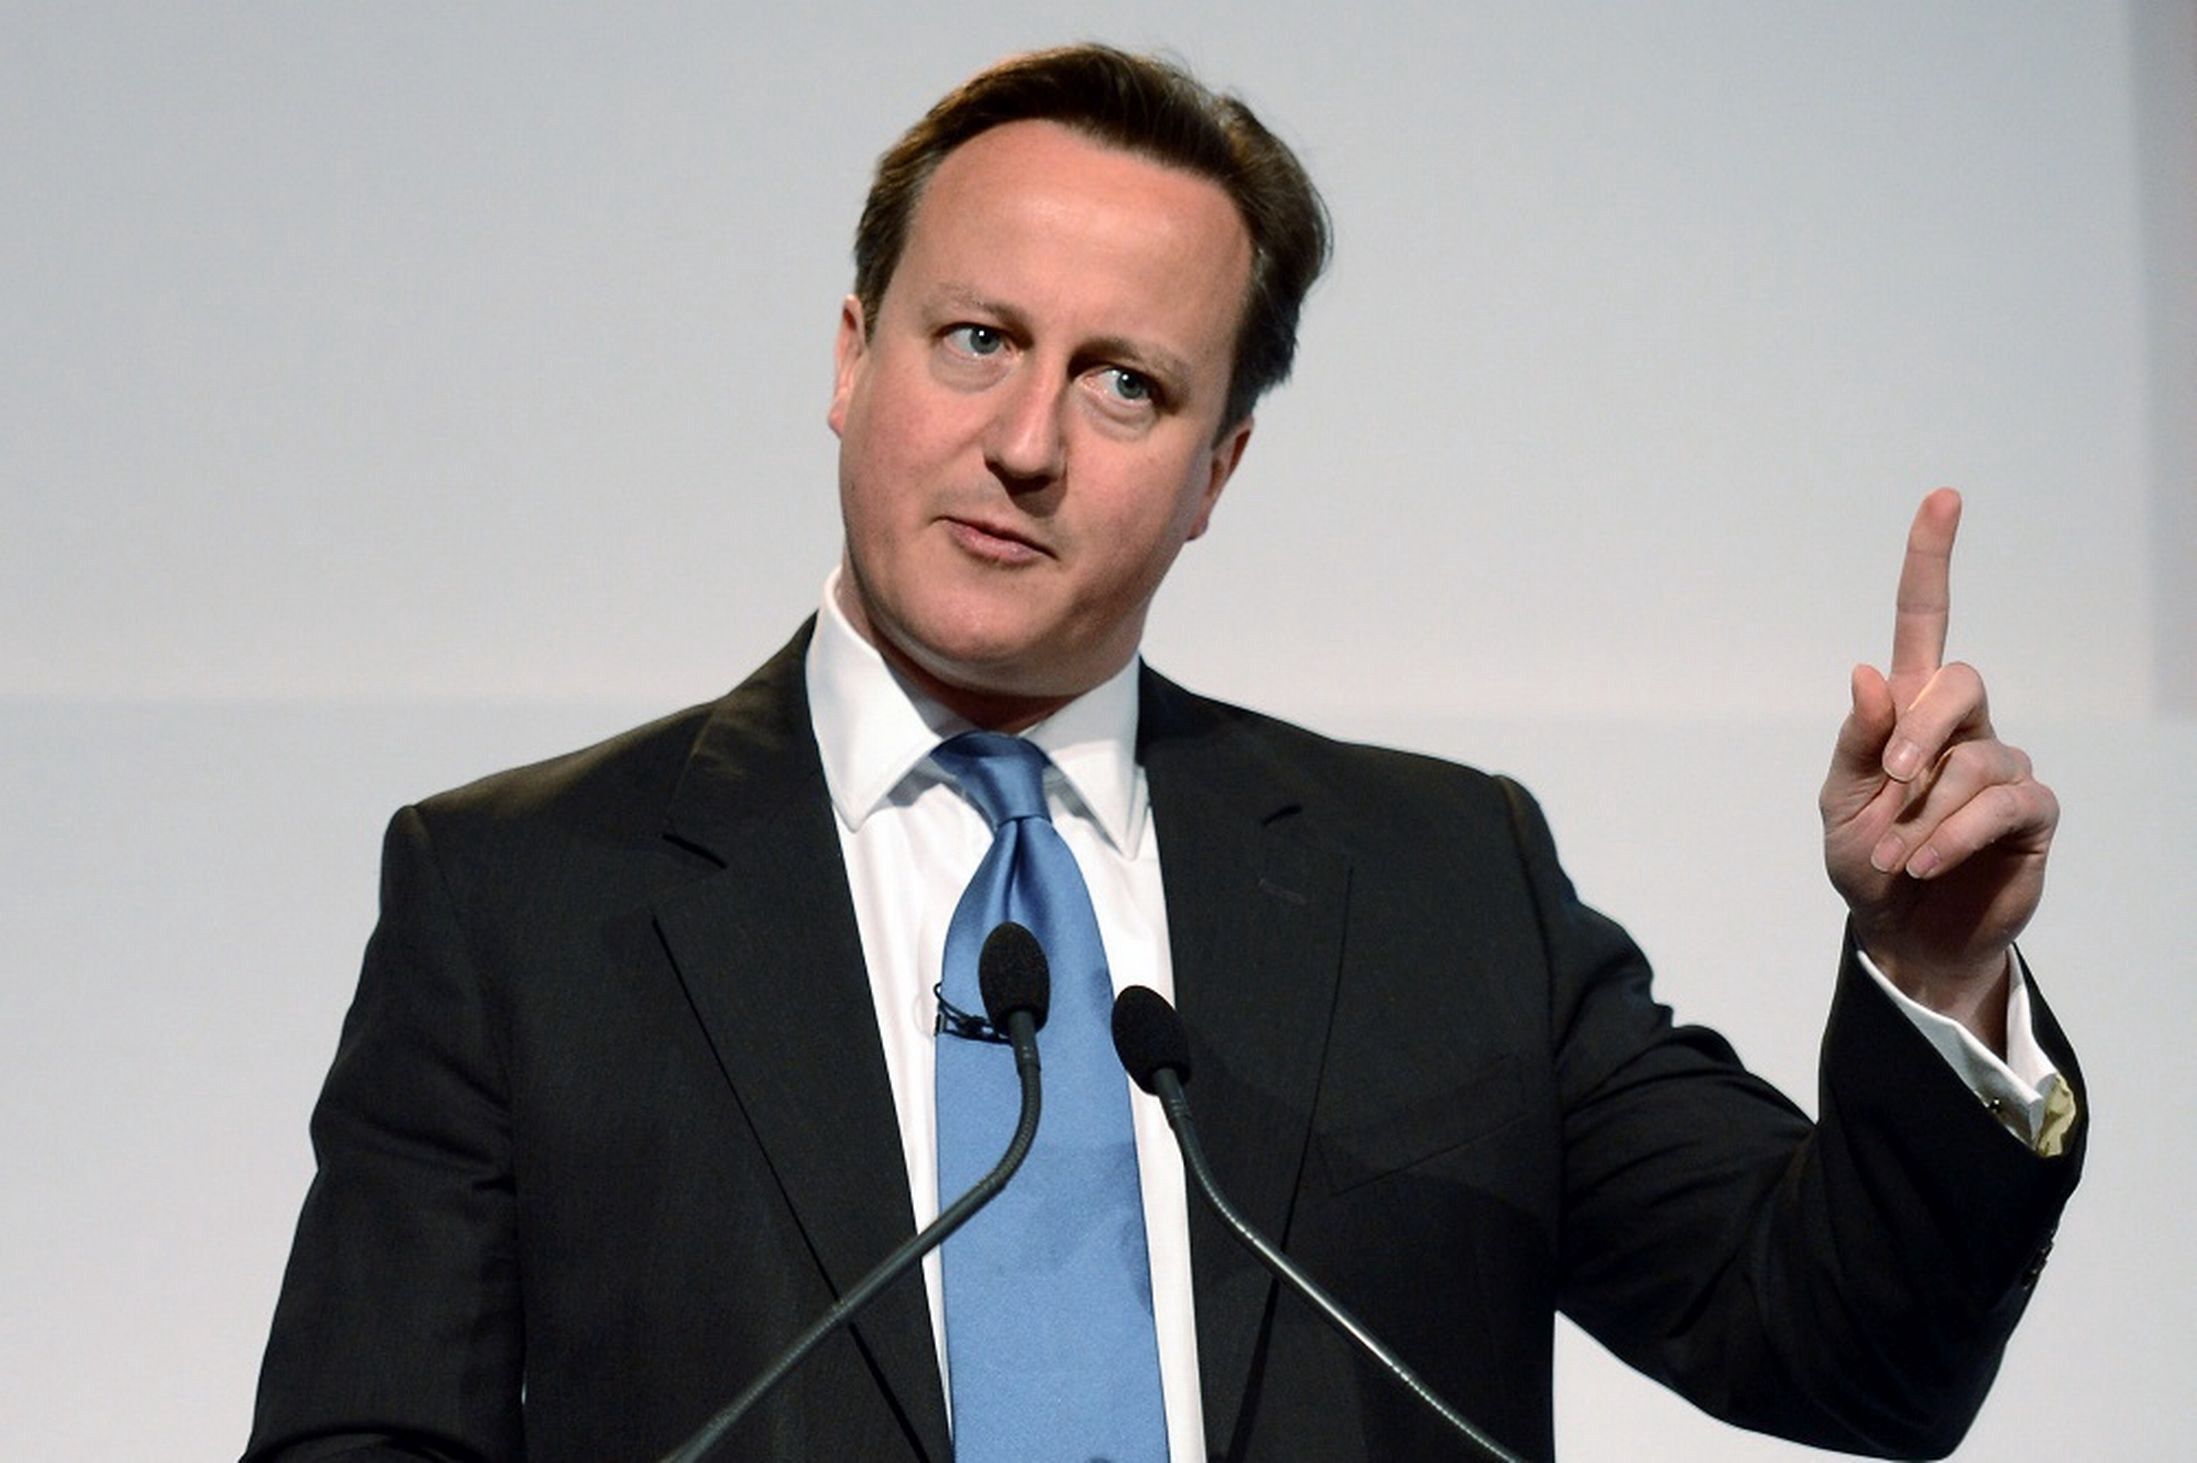 David Cameron’s illiterate proposal to counter-radicalisation by targeting Muslim women